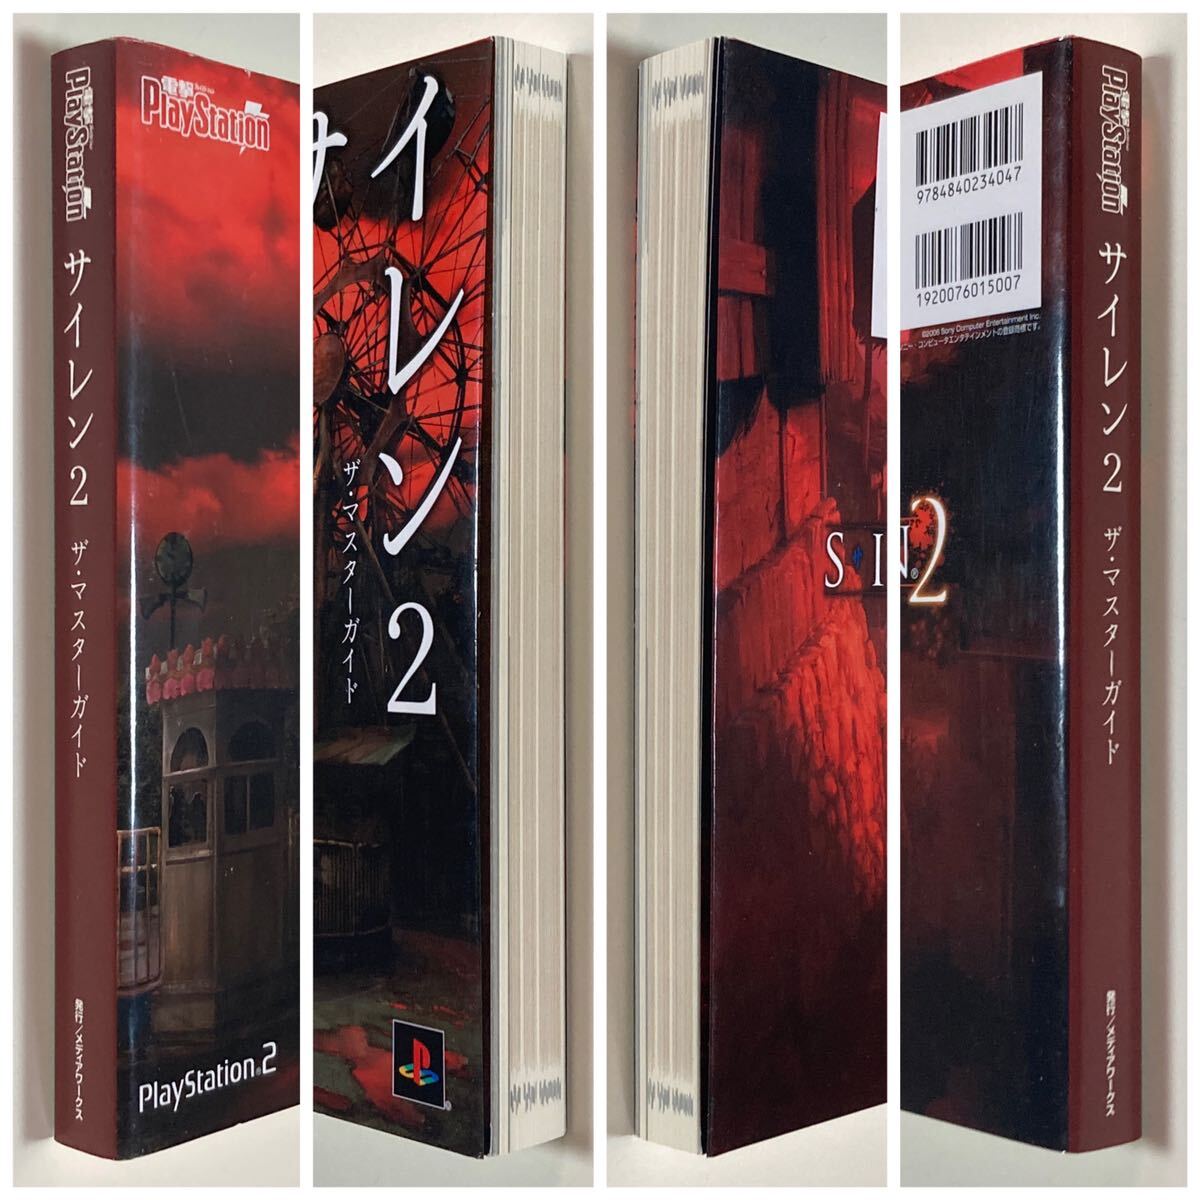 プレイステーション2 サイレン2 ザ・マスターガイド 初版 /PS2 PlayStation2 SIREN2 攻略本